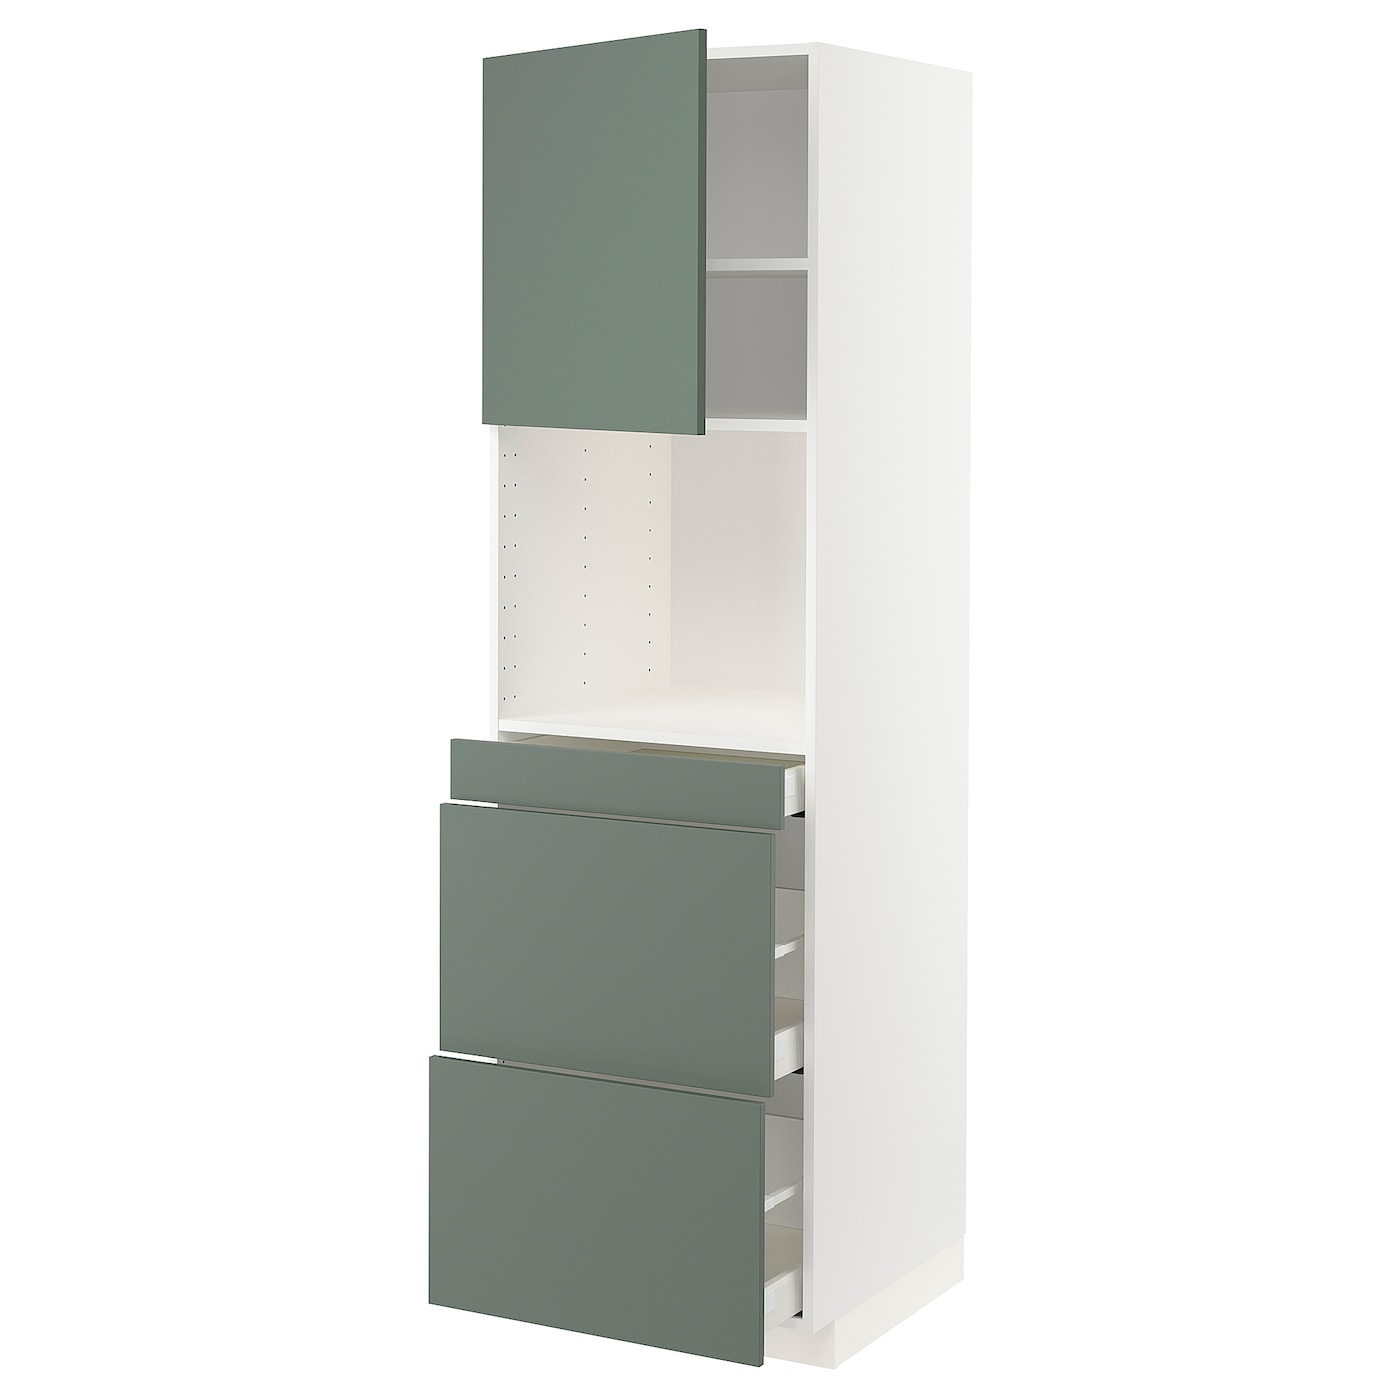 Шкаф - METOD / MAXIMERA  IKEA/ МЕТОД/МАКСИМЕРА  ИКЕА,  208х60 см, зеленый/белый